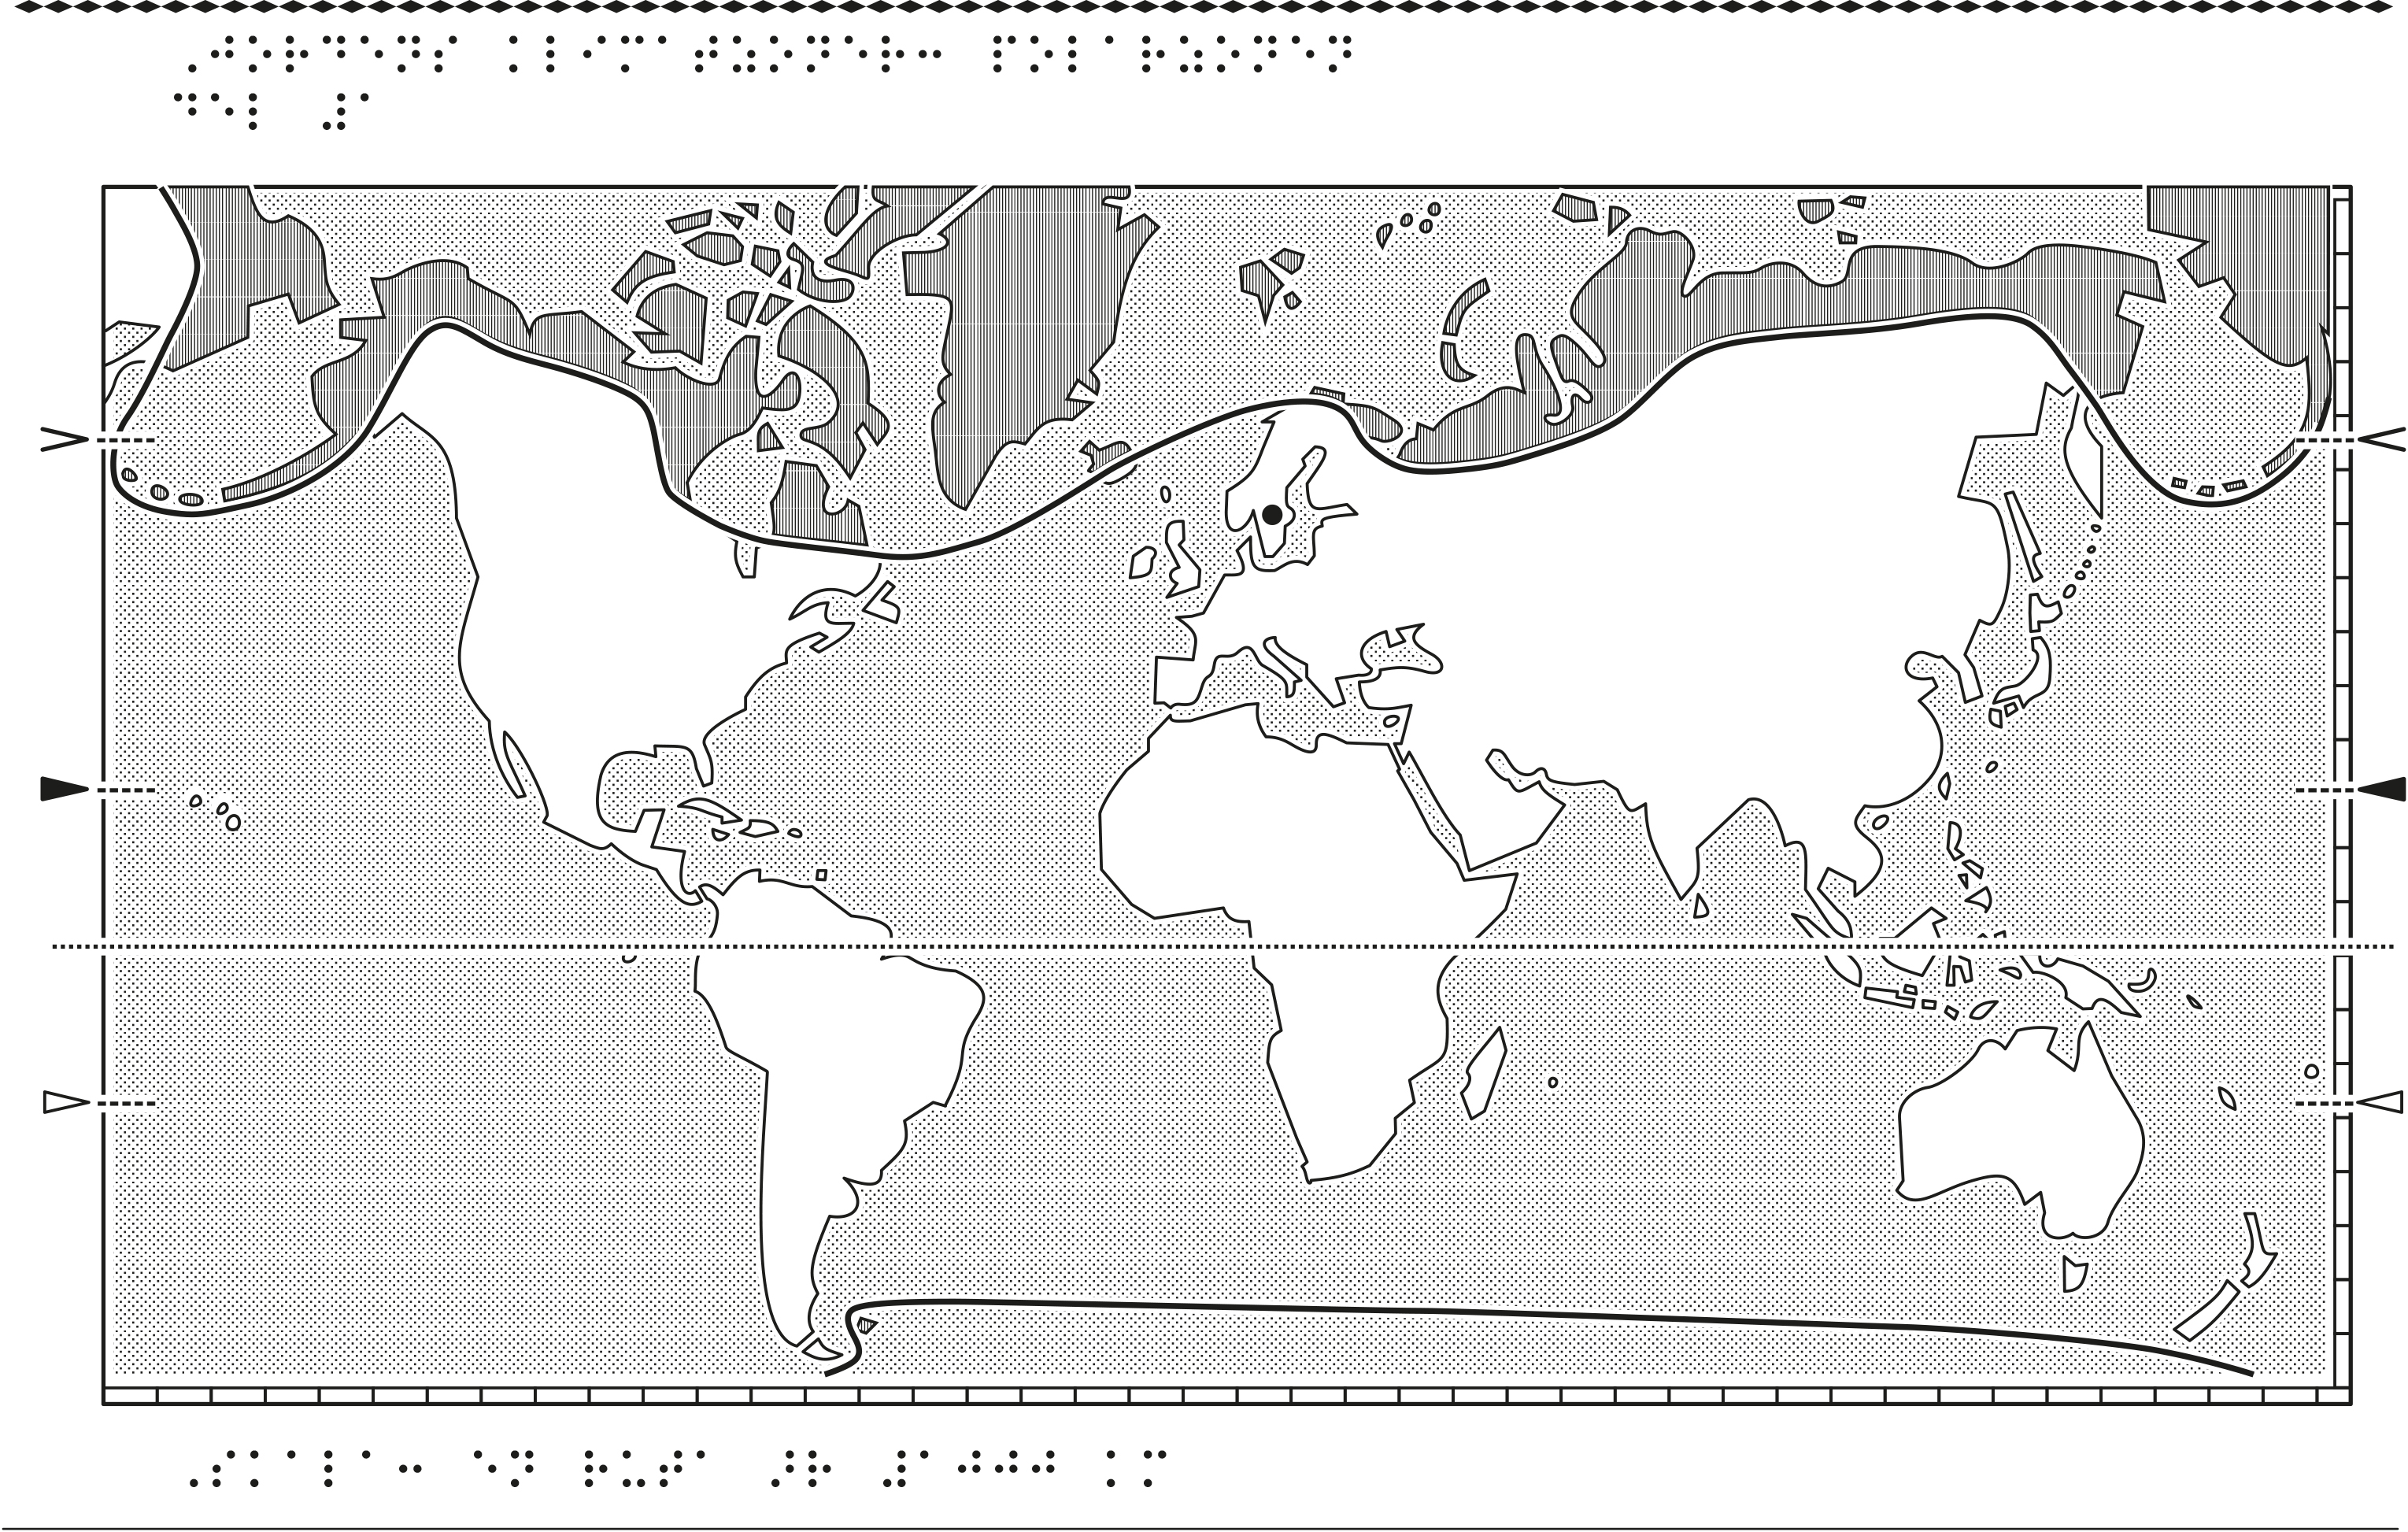 Världskarta i relief med klimatzoner markerade.